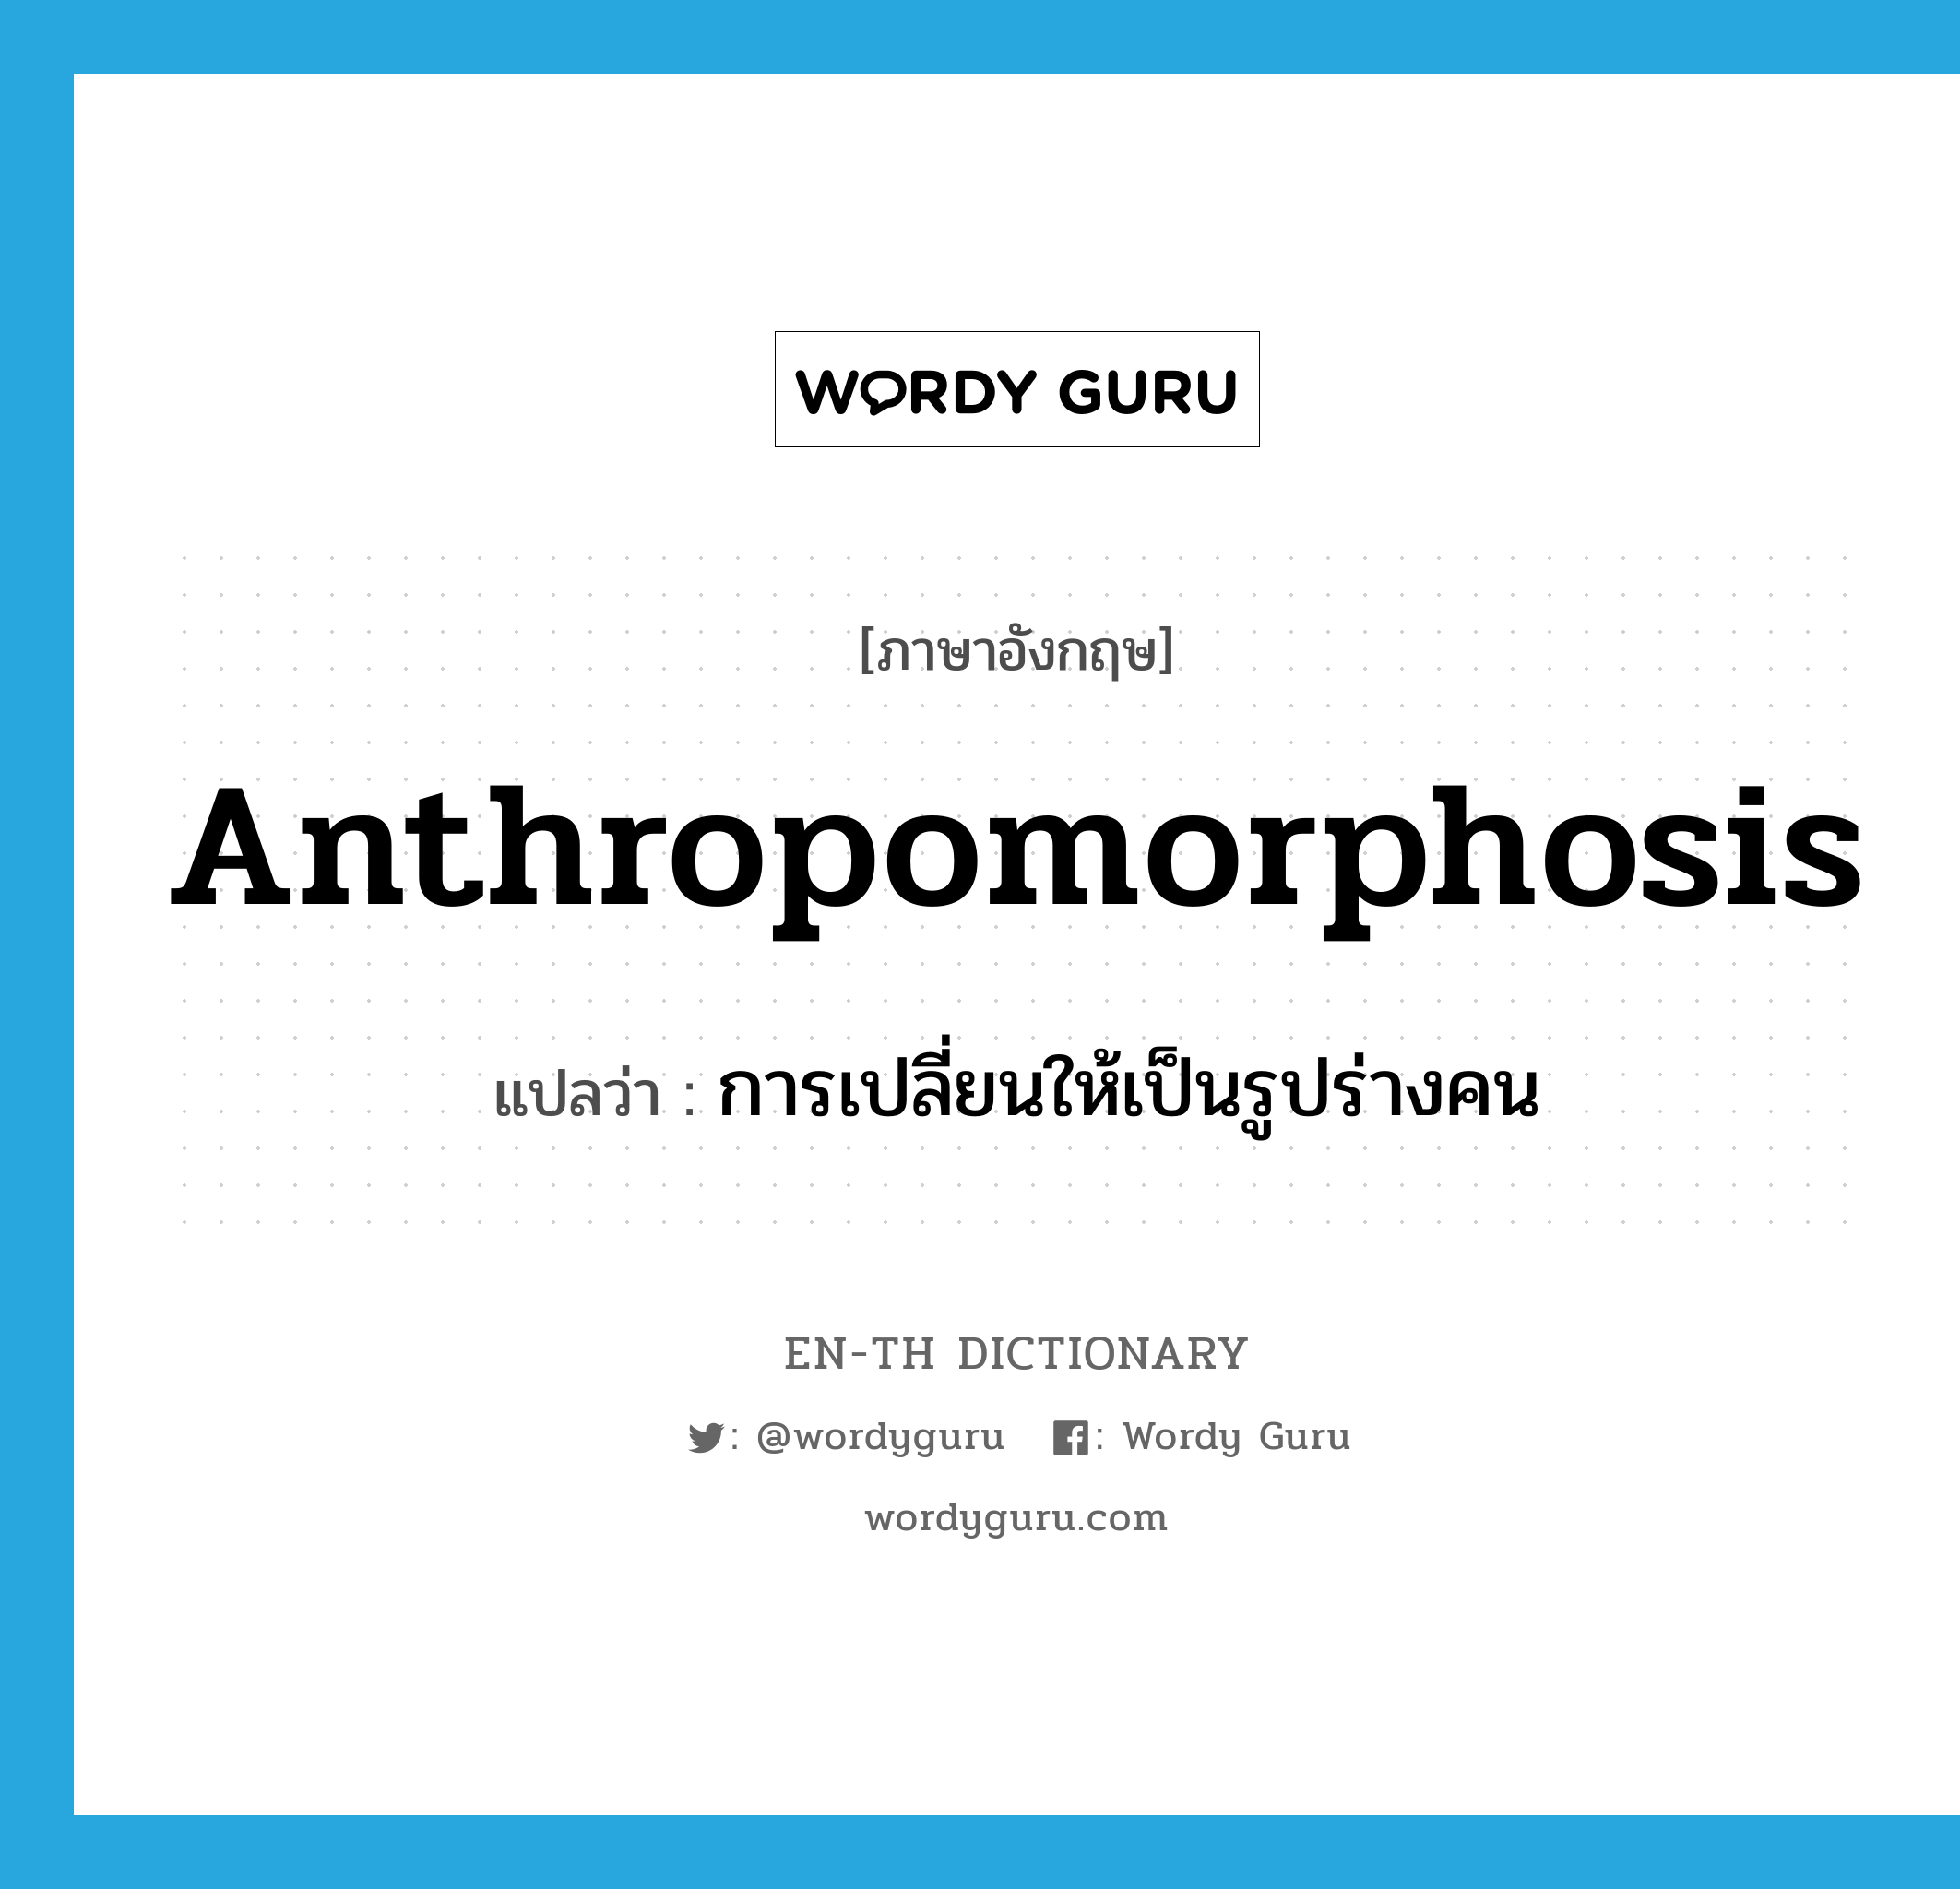 การเปลี่ยนให้เป็นรูปร่างคน ภาษาอังกฤษ?, คำศัพท์ภาษาอังกฤษ การเปลี่ยนให้เป็นรูปร่างคน แปลว่า anthropomorphosis ประเภท N หมวด N